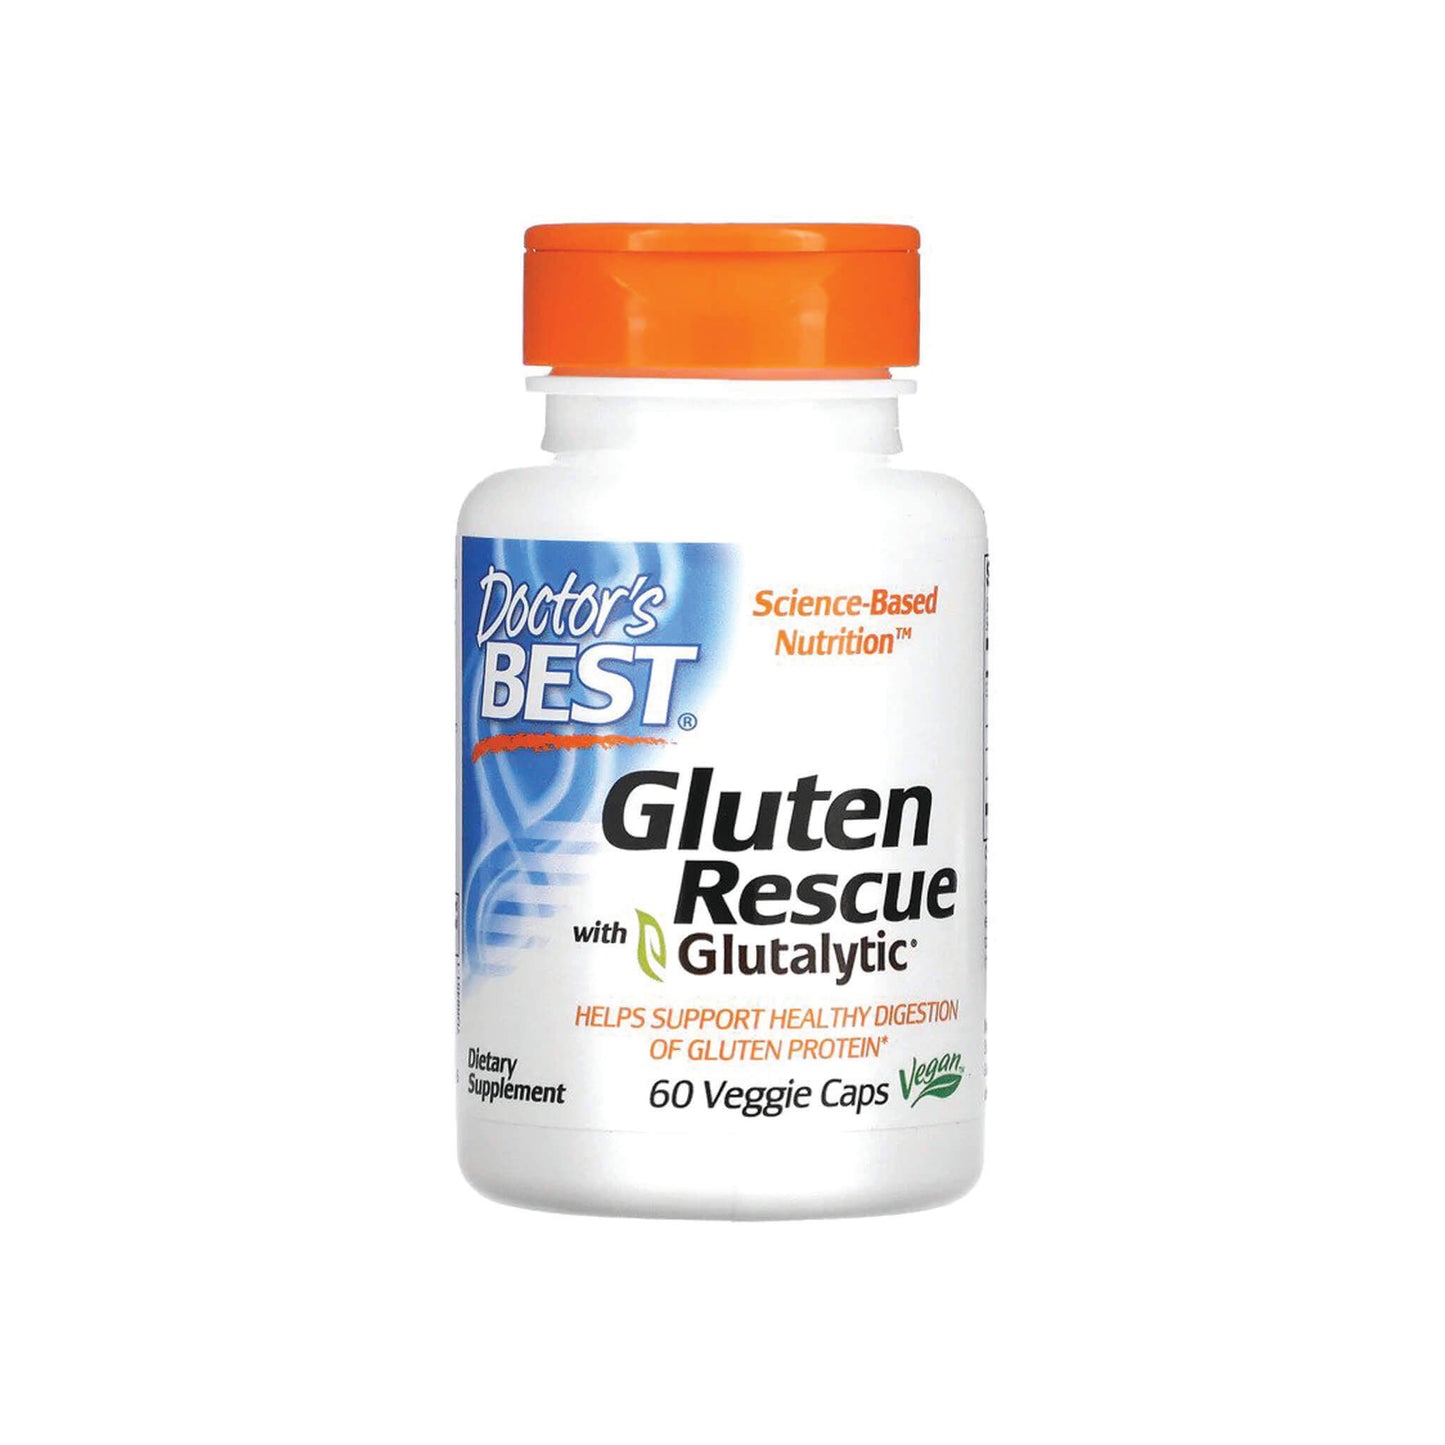 Doctor's Best, Gluten Rescue with Glutalytic - 60 Veggie Caps